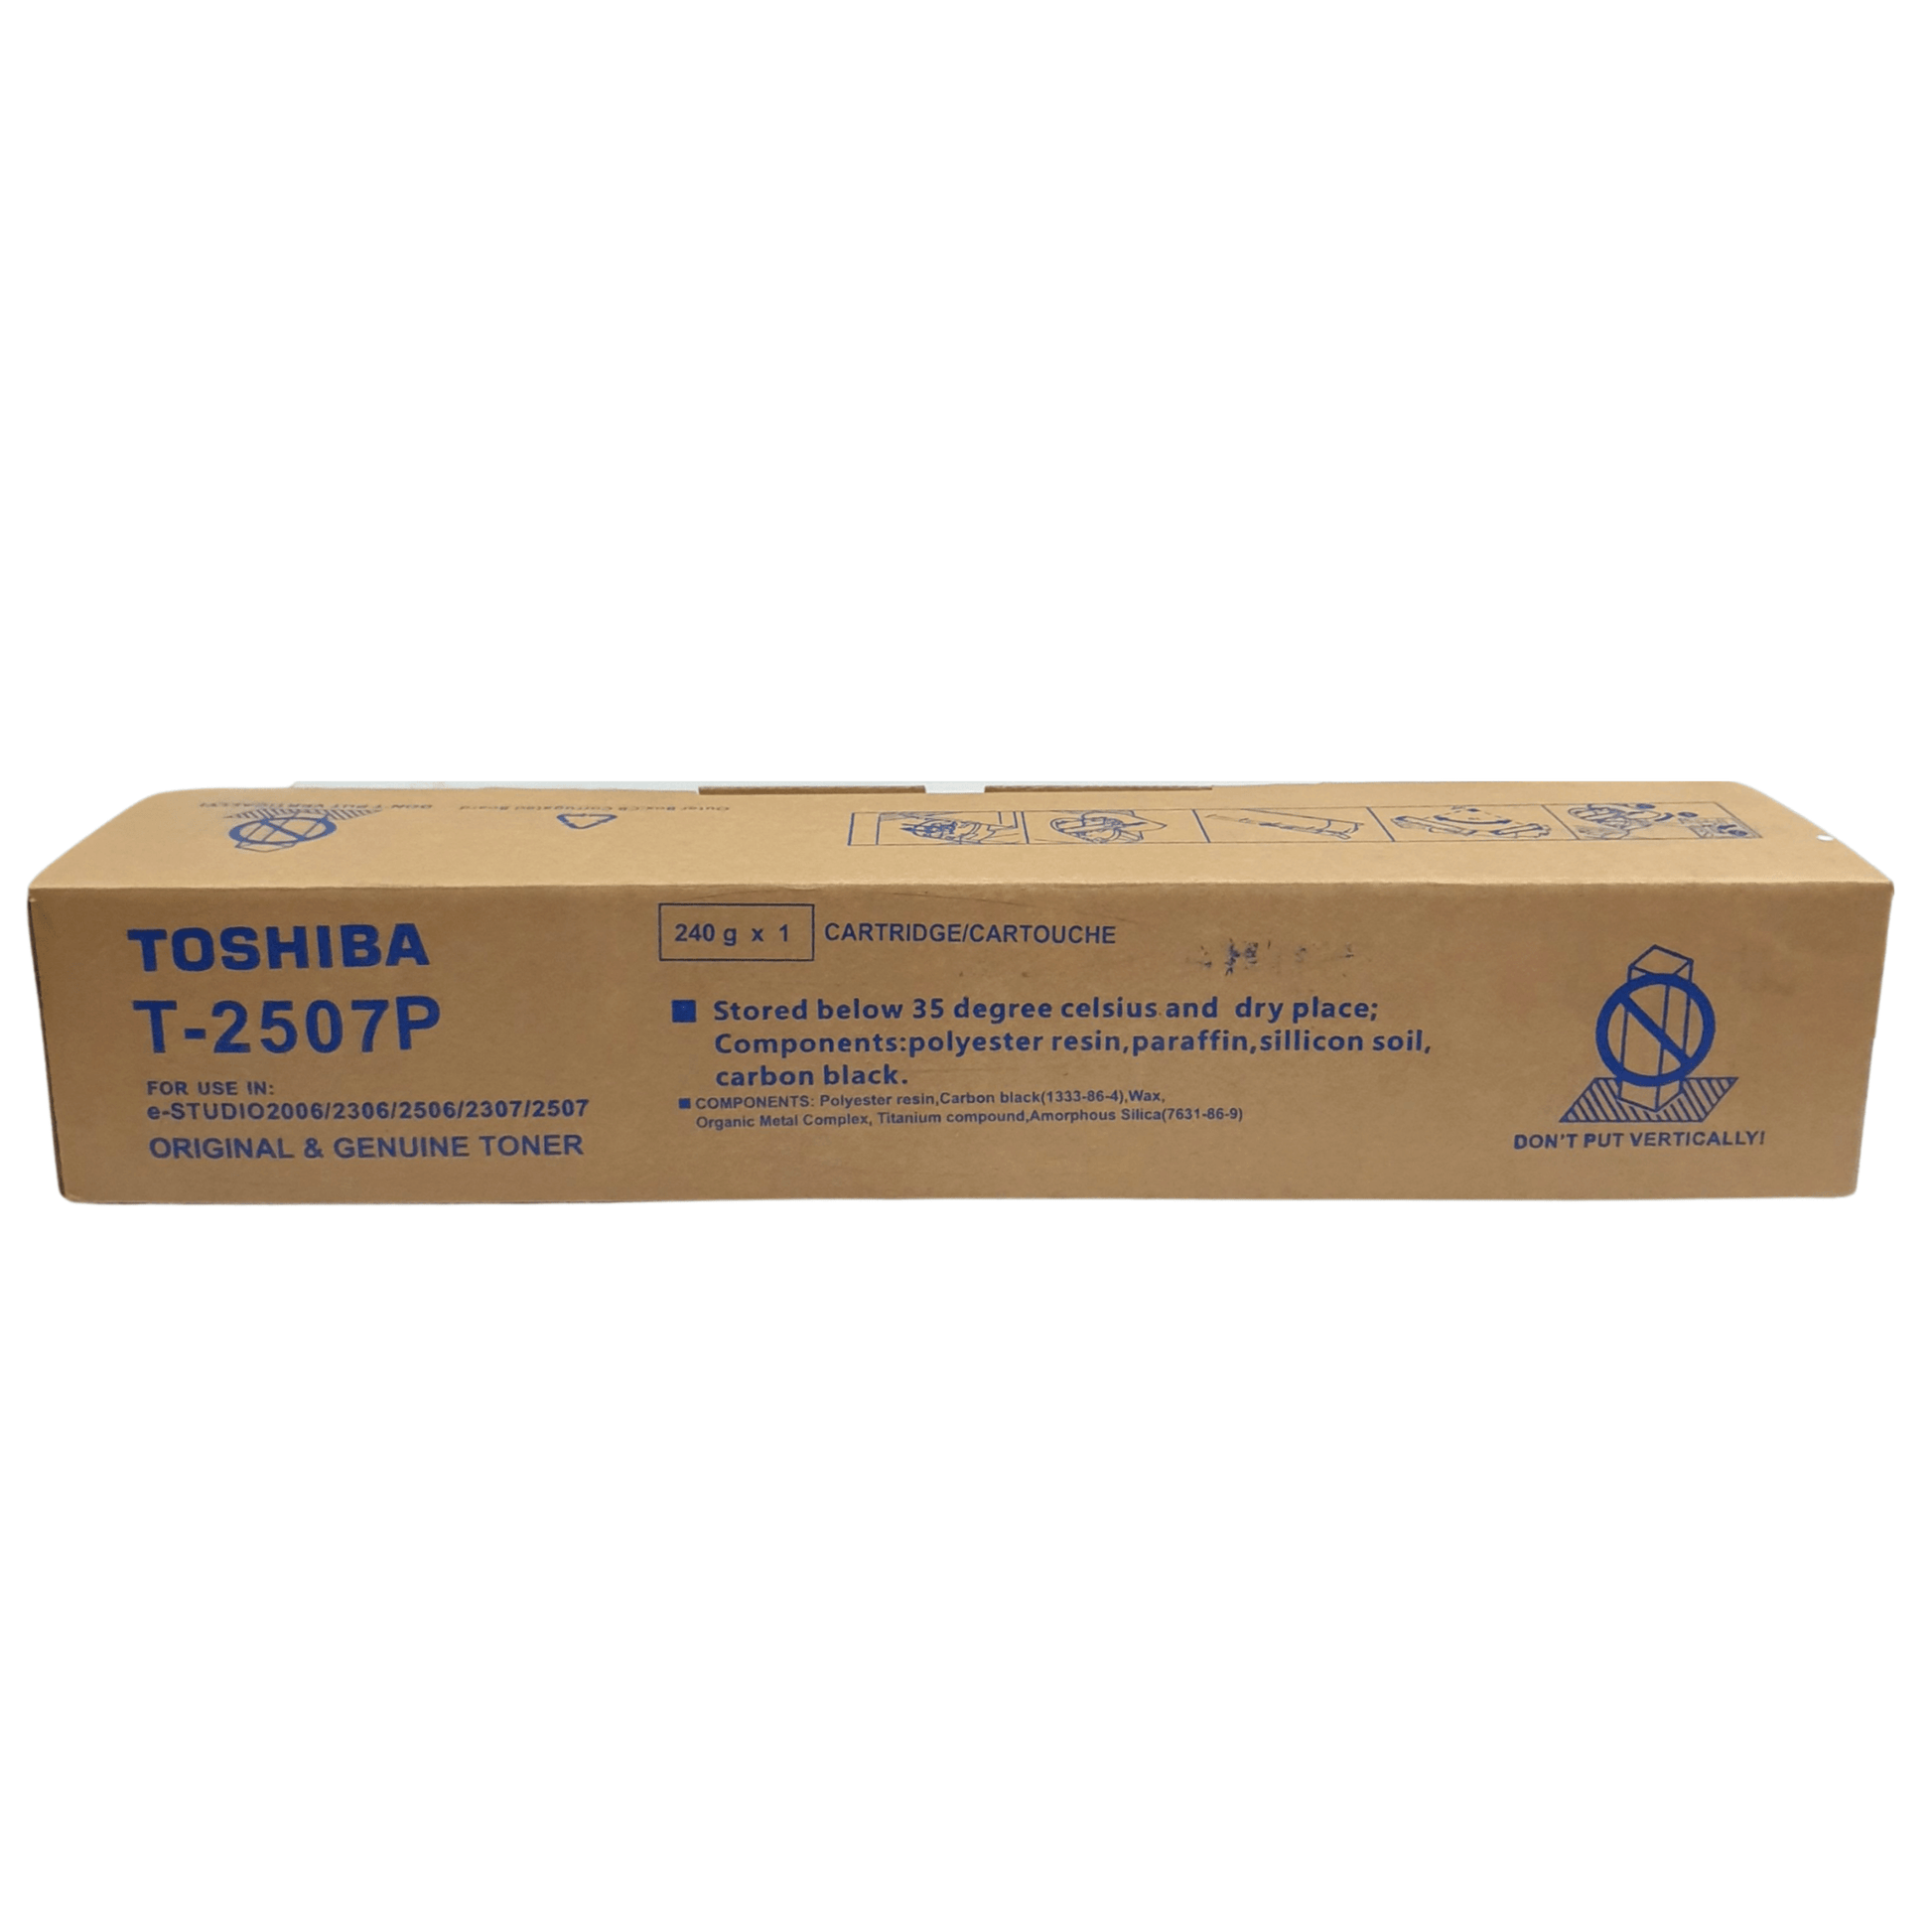 Toshiba Toner Cartridge T2507P - 𝐏𝐑𝐄𝐌𝐈𝐄𝐑 𝐓𝐑𝐀𝐃𝐄𝐑𝐒